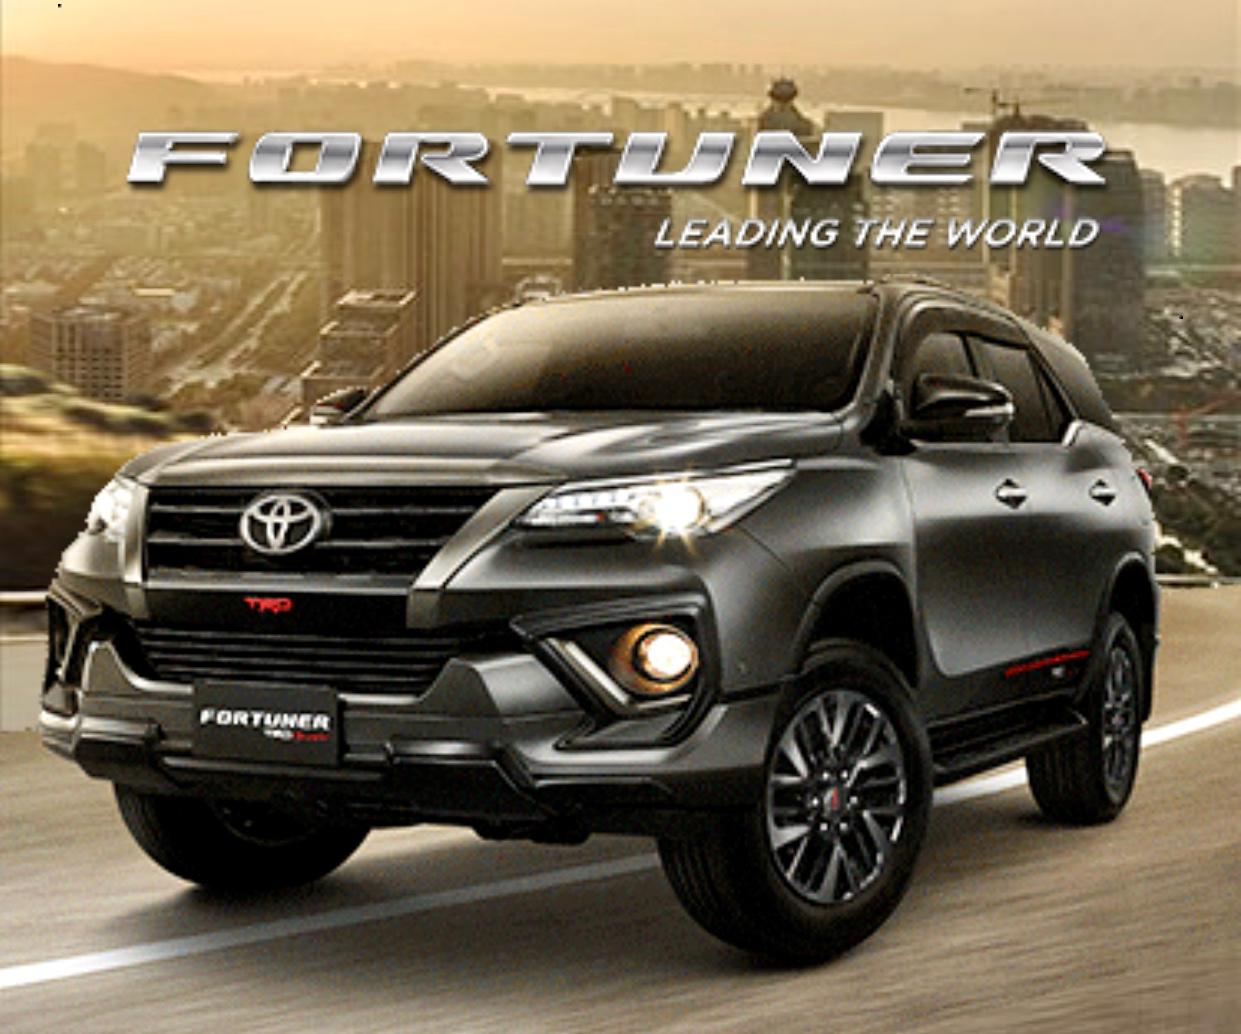 Toyota AStrido - Keunggulan Toyota Fortuner sebagai SUV Terbaik untuk Keluarga